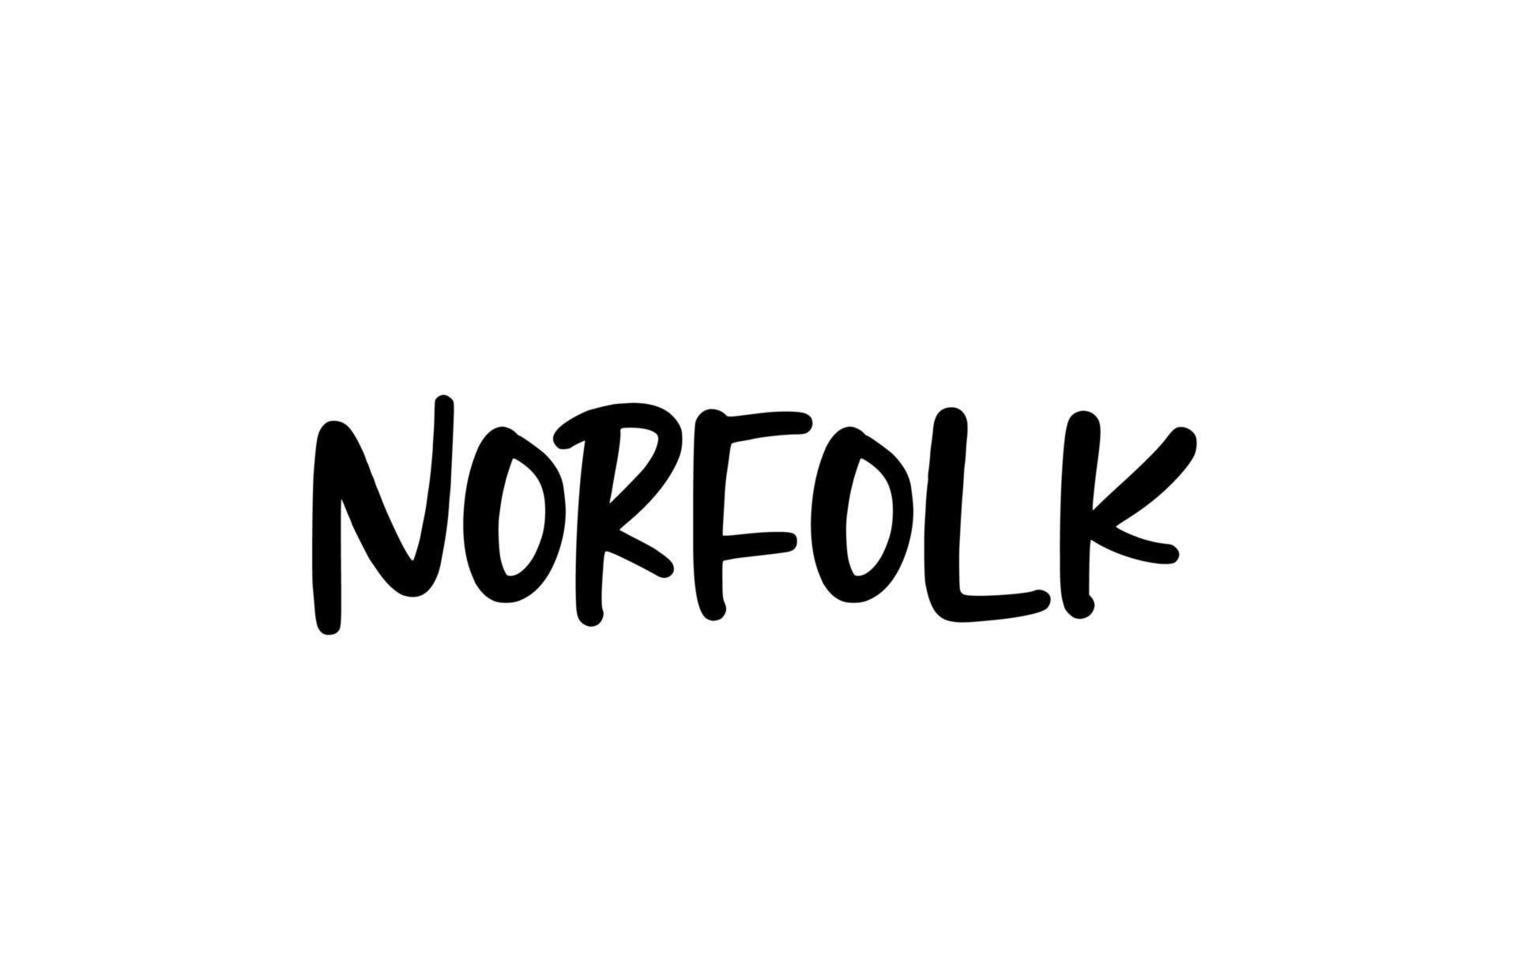 Norfolk City tipografía manuscrita palabra texto letras a mano. texto de caligrafía moderna. de color negro vector